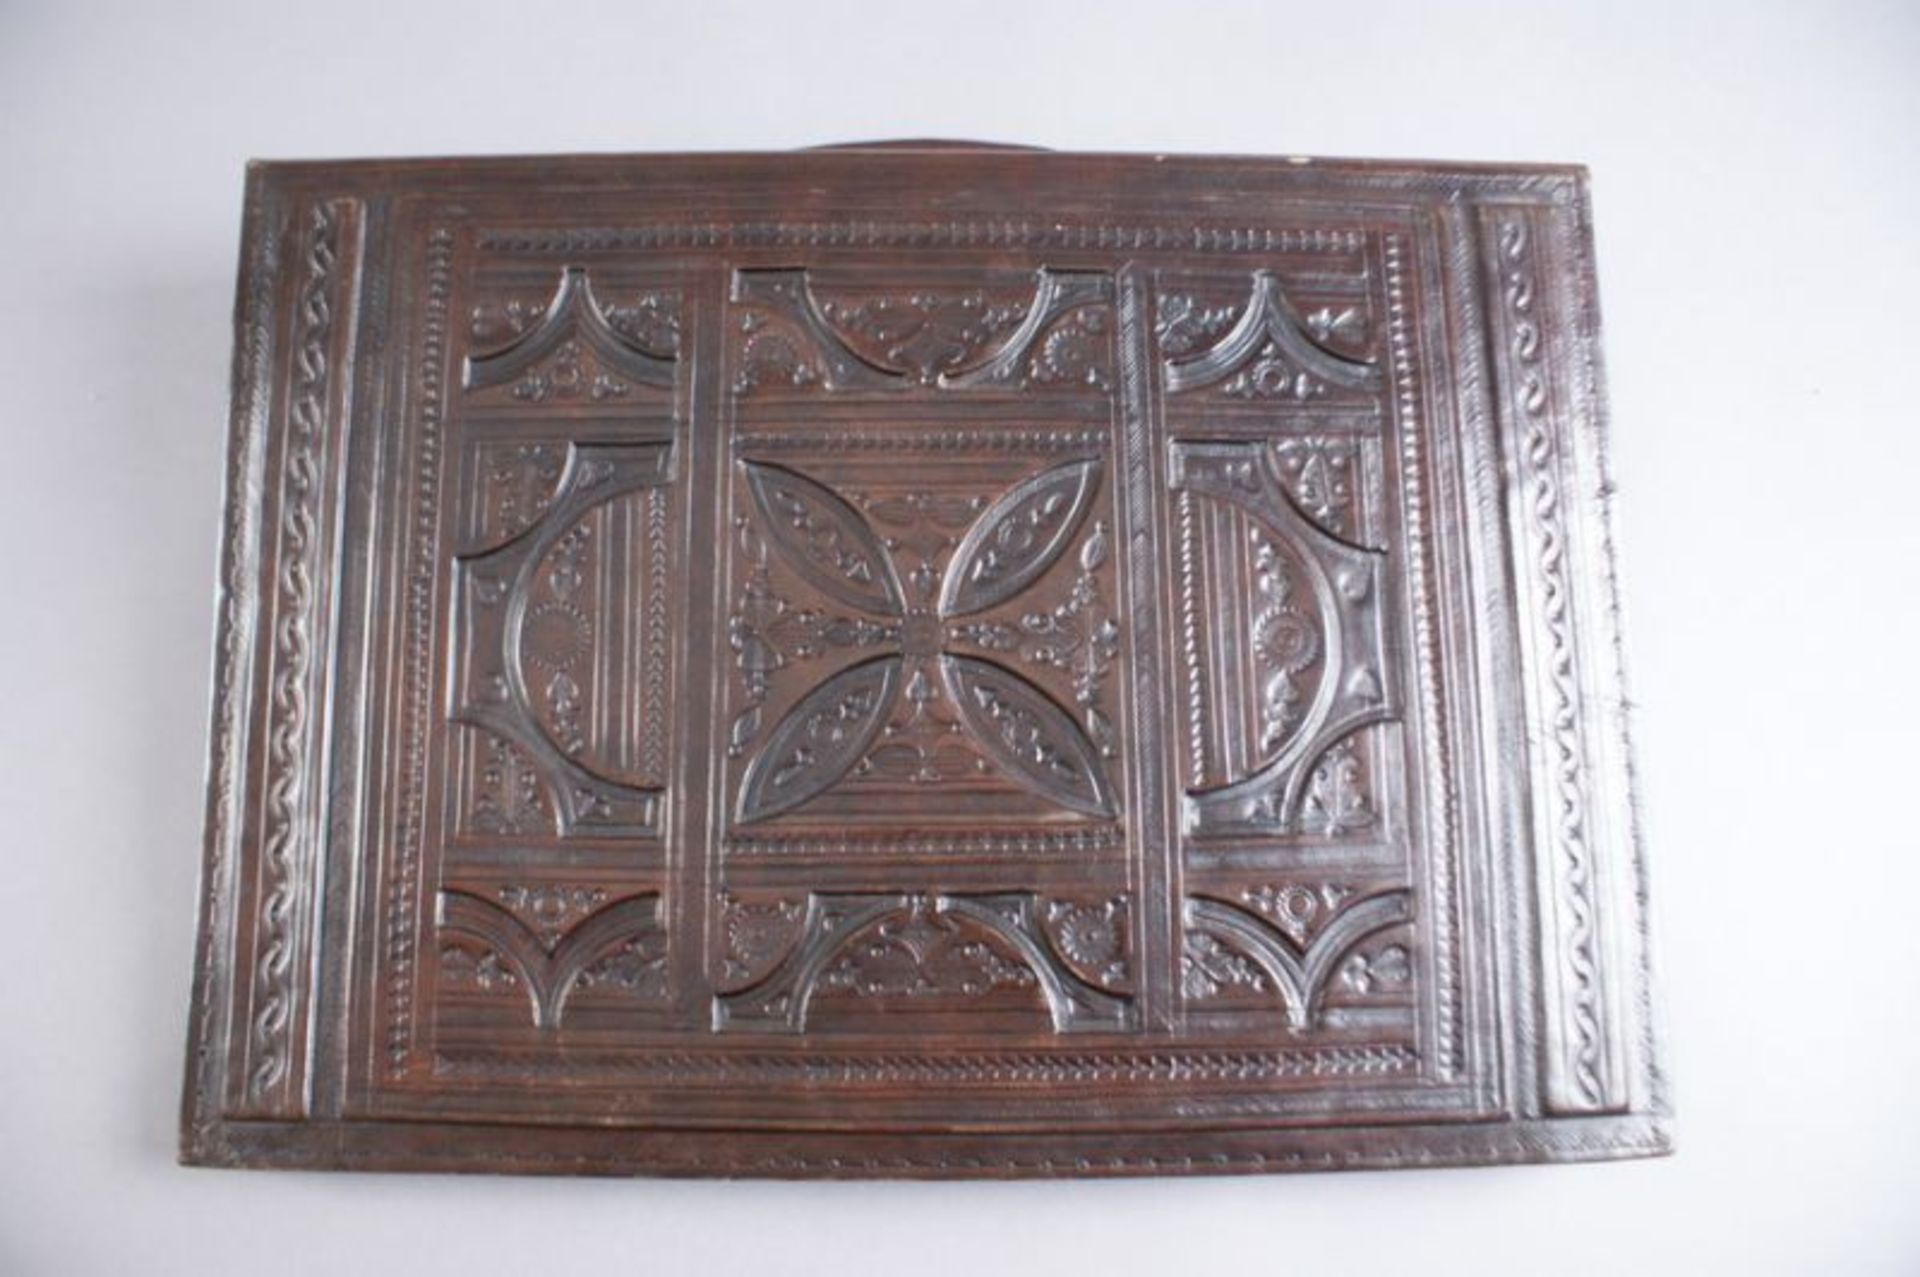 LEDER DOKUMENTENTASCHE aufwändig geprägtes Leder mit gotischen Ornamenten, 47x33x8 cm 20.17 % - Bild 4 aus 5